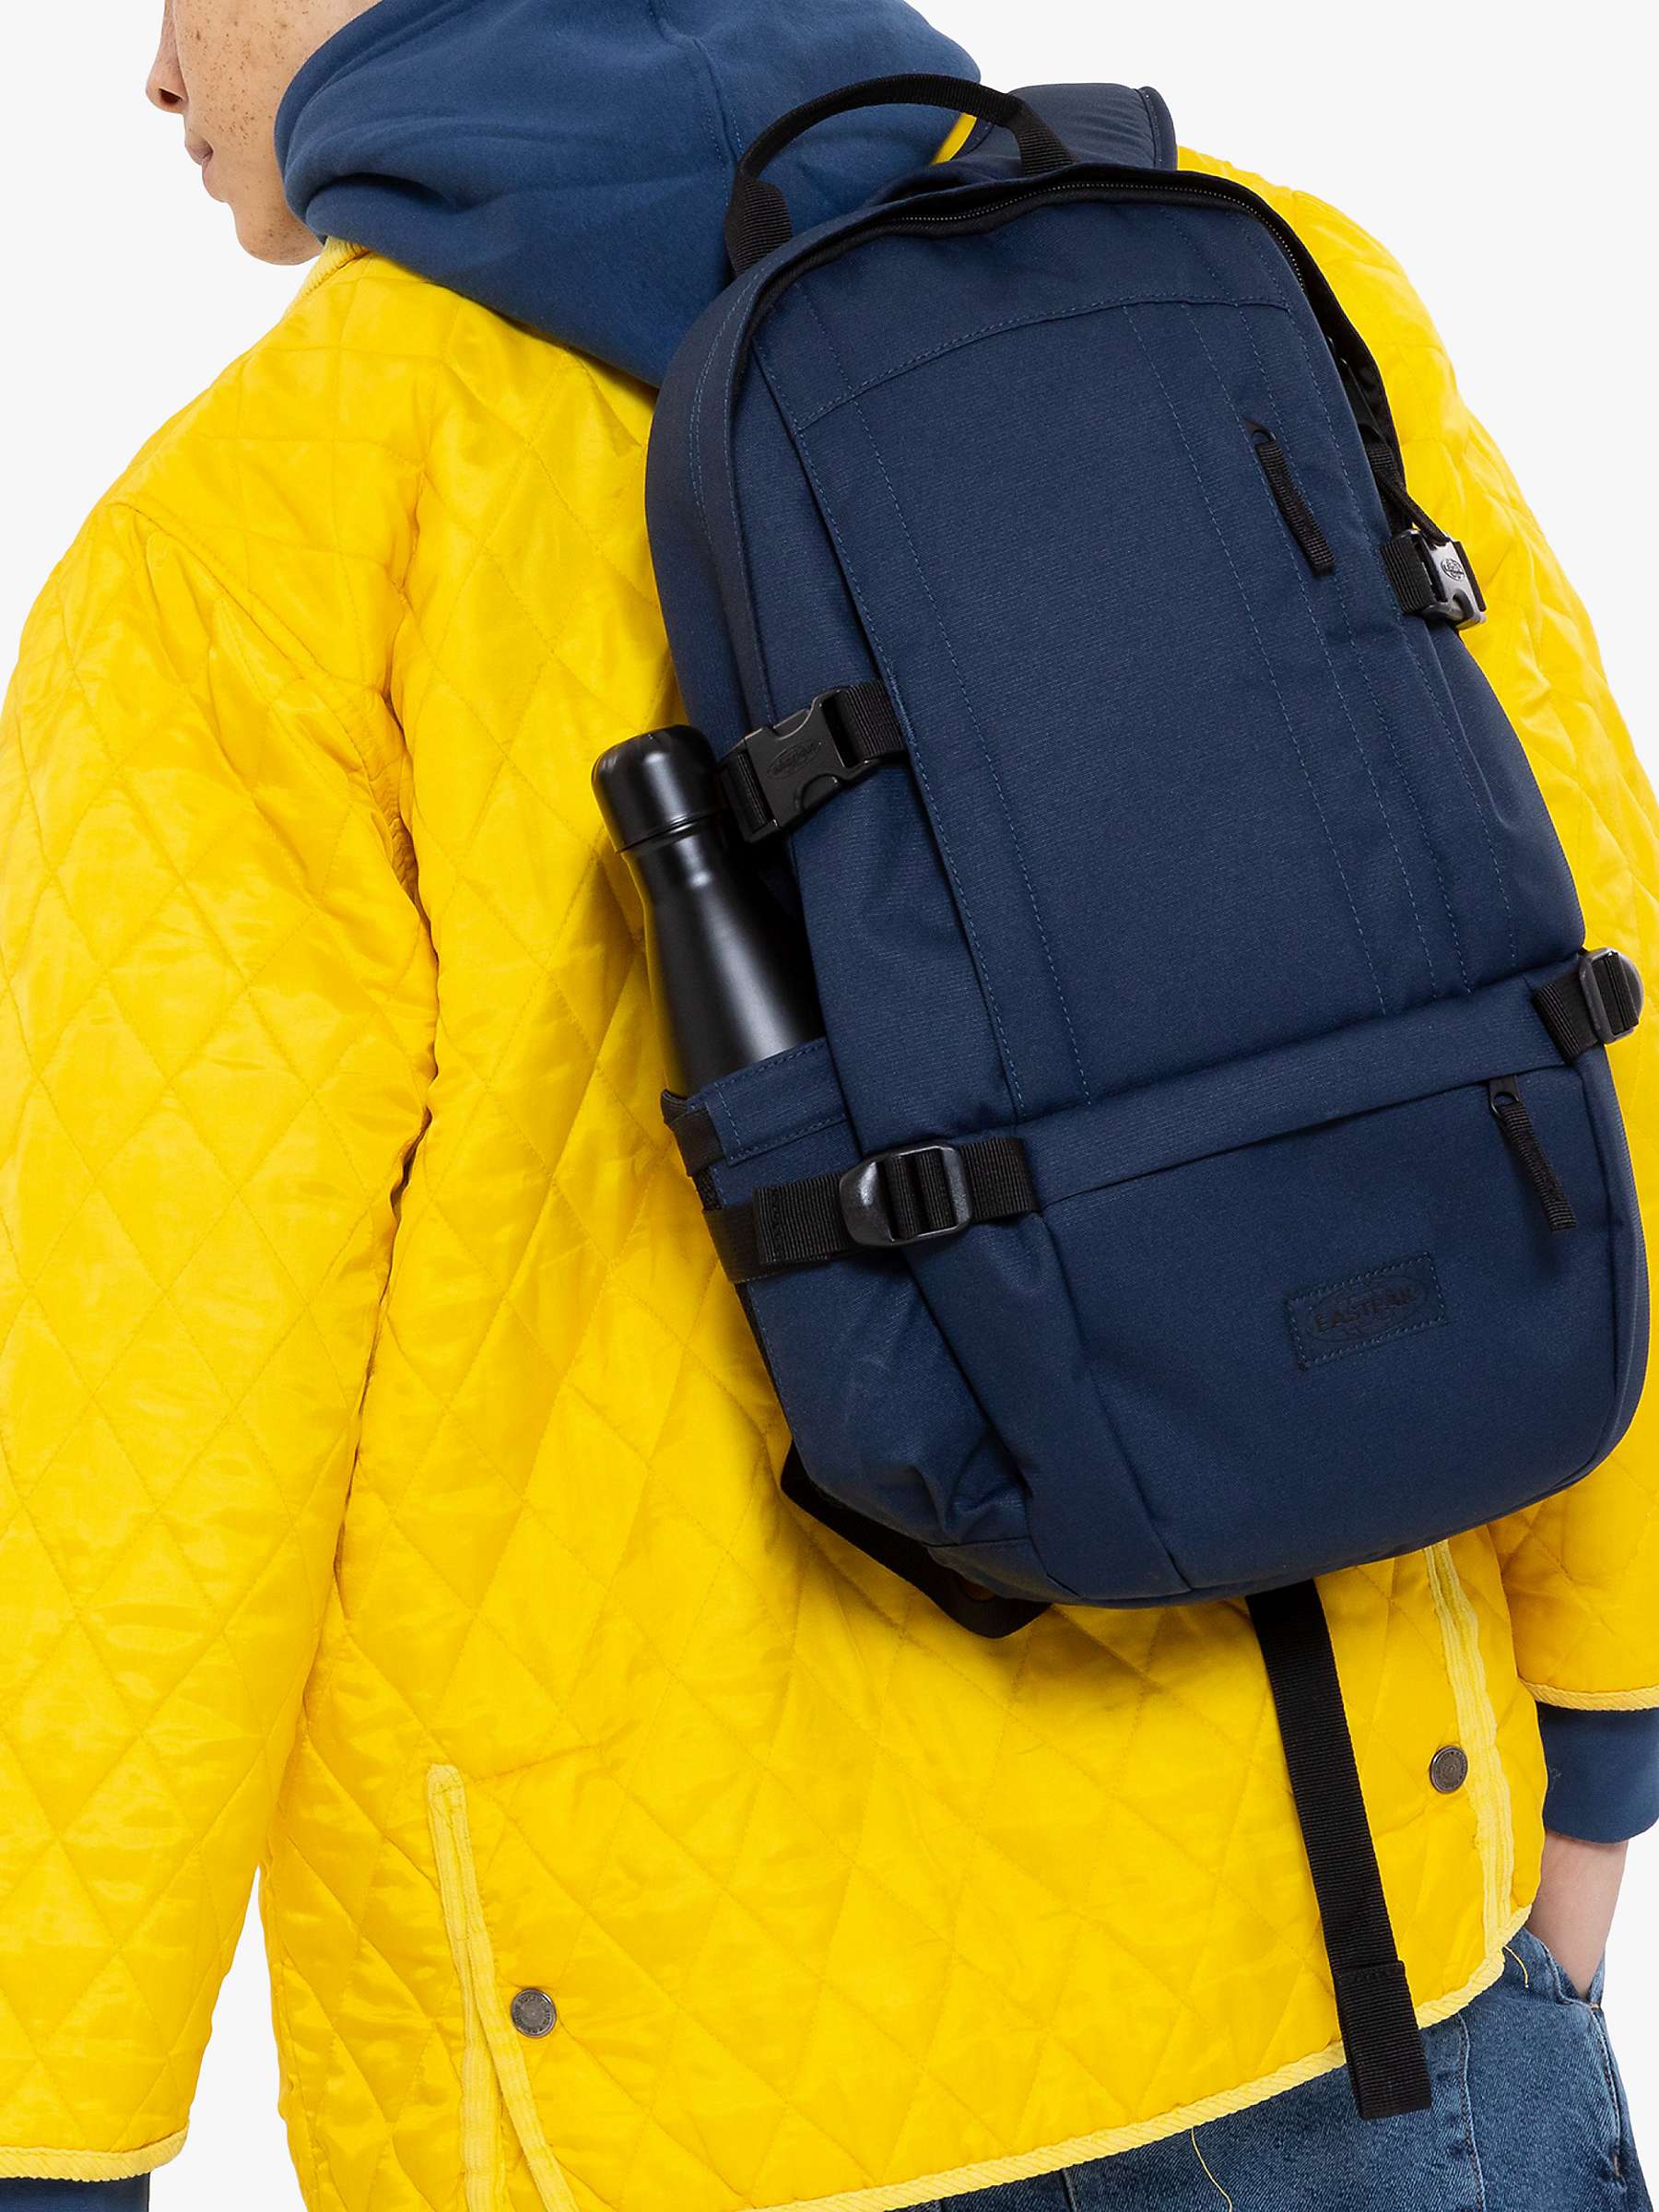 Buy Eastpak Floid Backpack Online at johnlewis.com